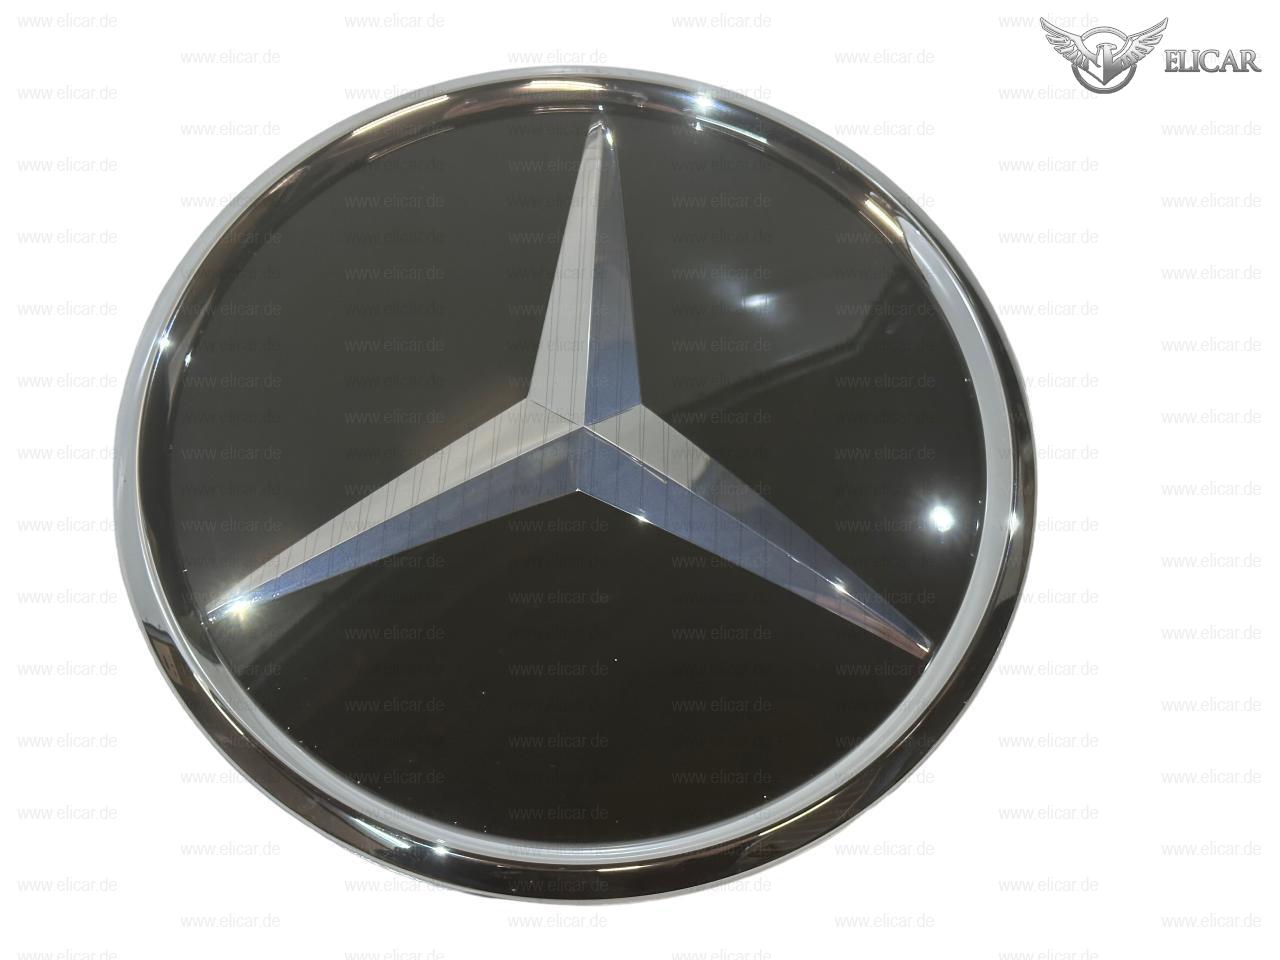 Grundplatte Kühlergrill / Stern Distronic für Mercedes-Benz 